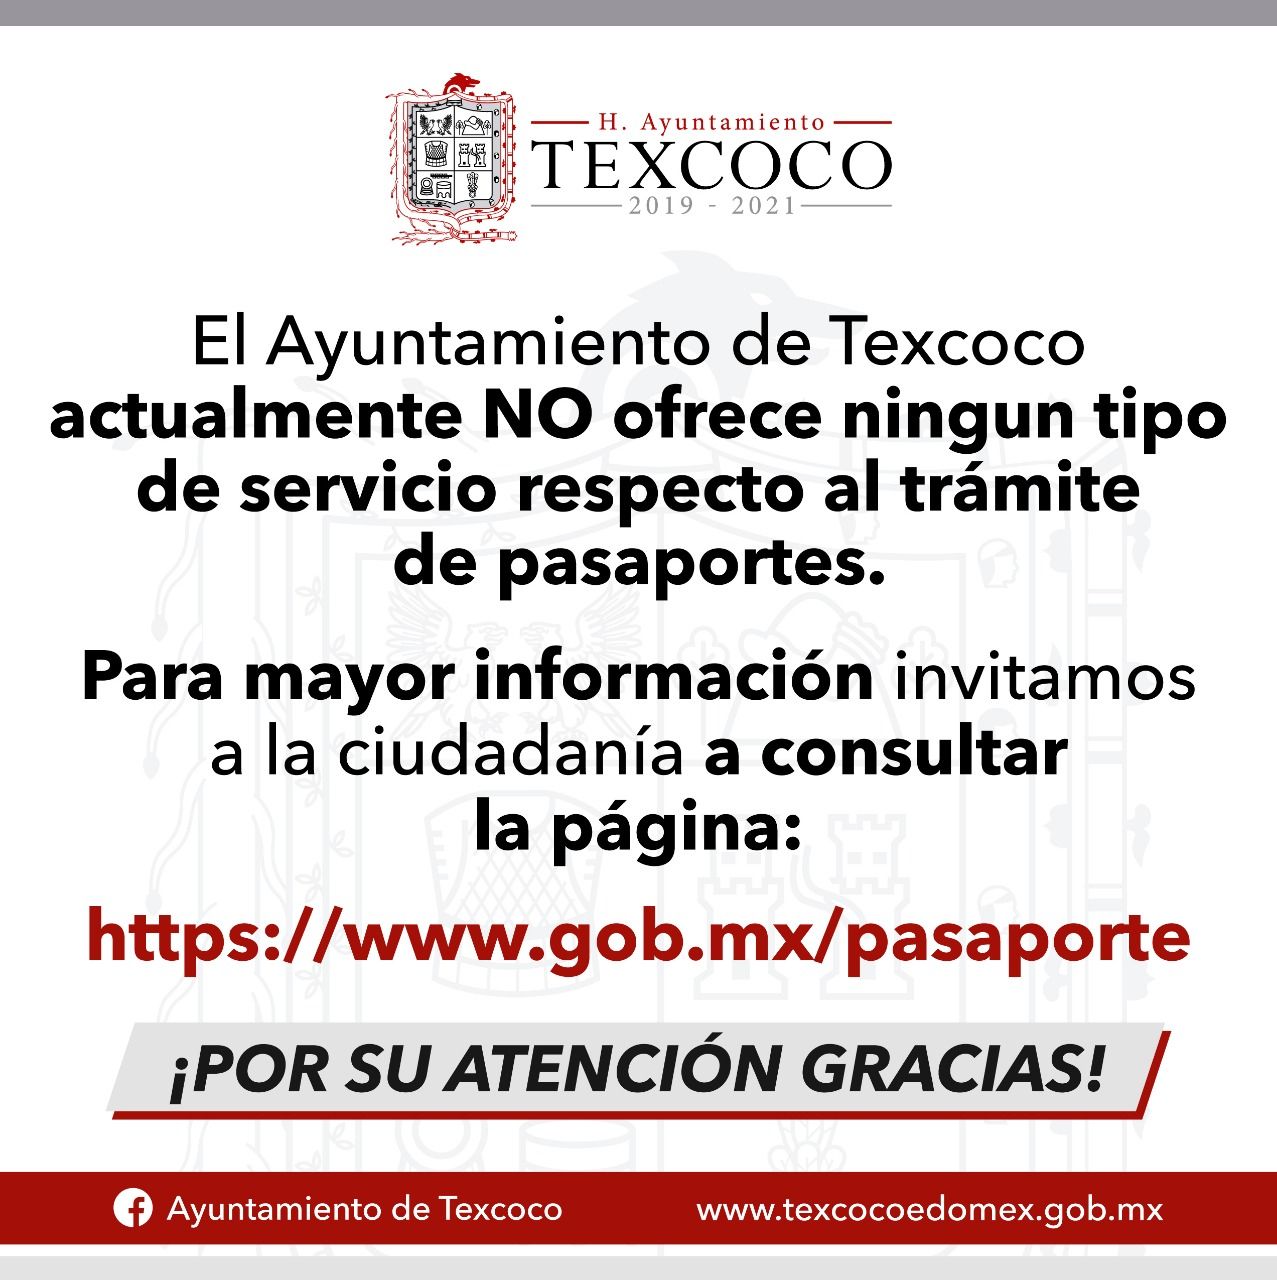 Gobierno de Texcoco desconoce todo trámite de pasaportes del 30 de marzo del 2020 en adelante